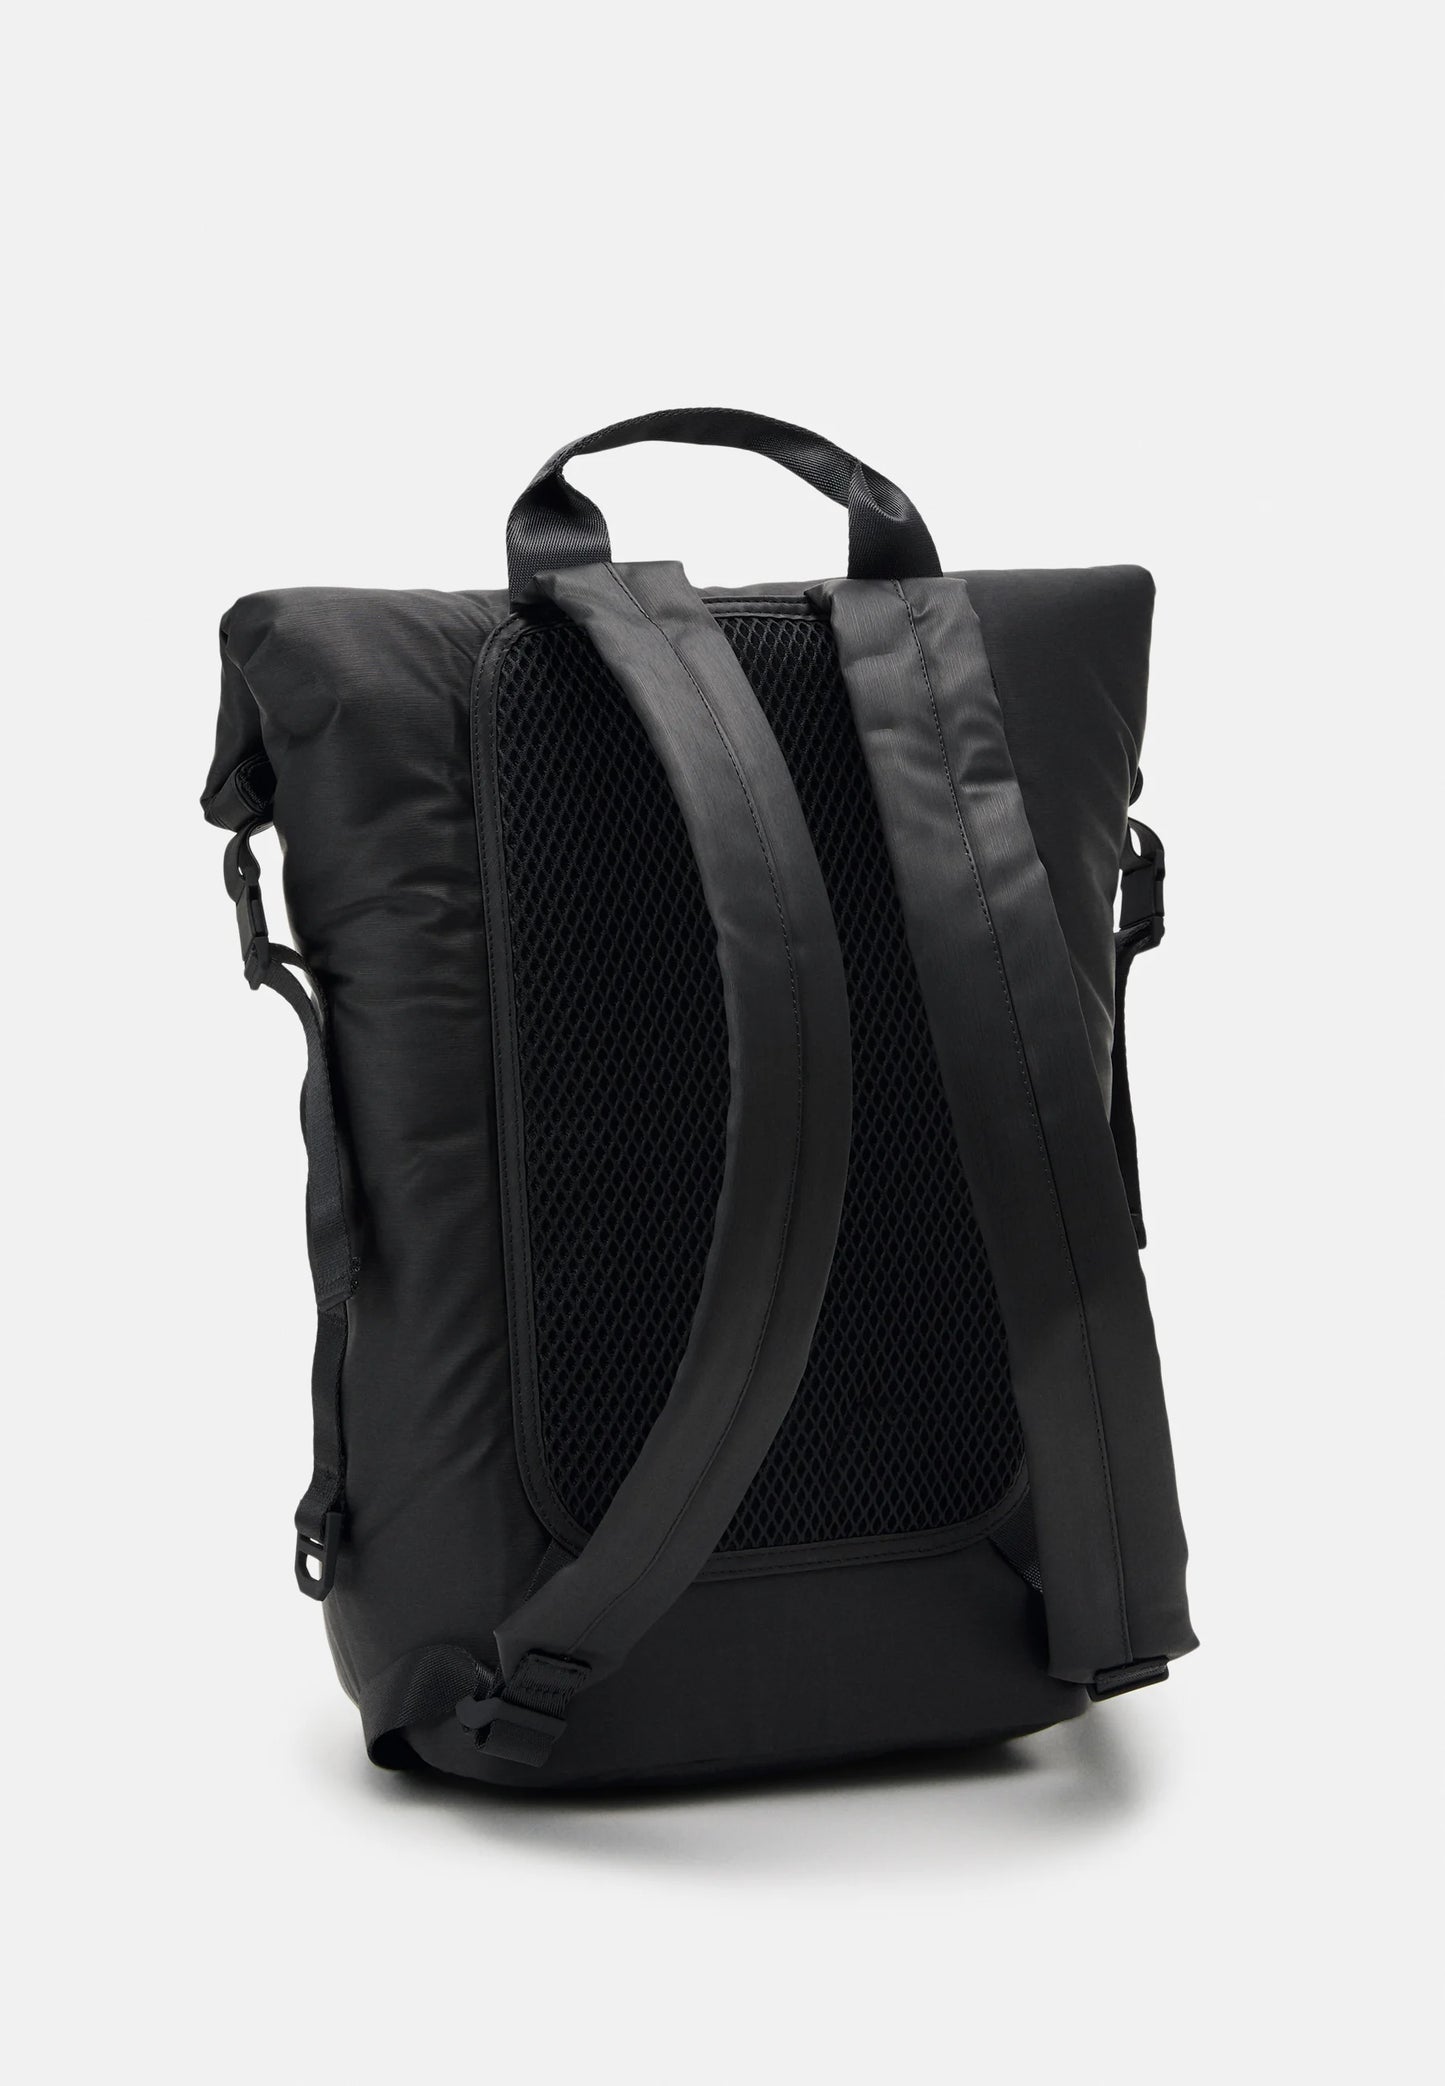 RAINS BATOR PUFFER black backpack